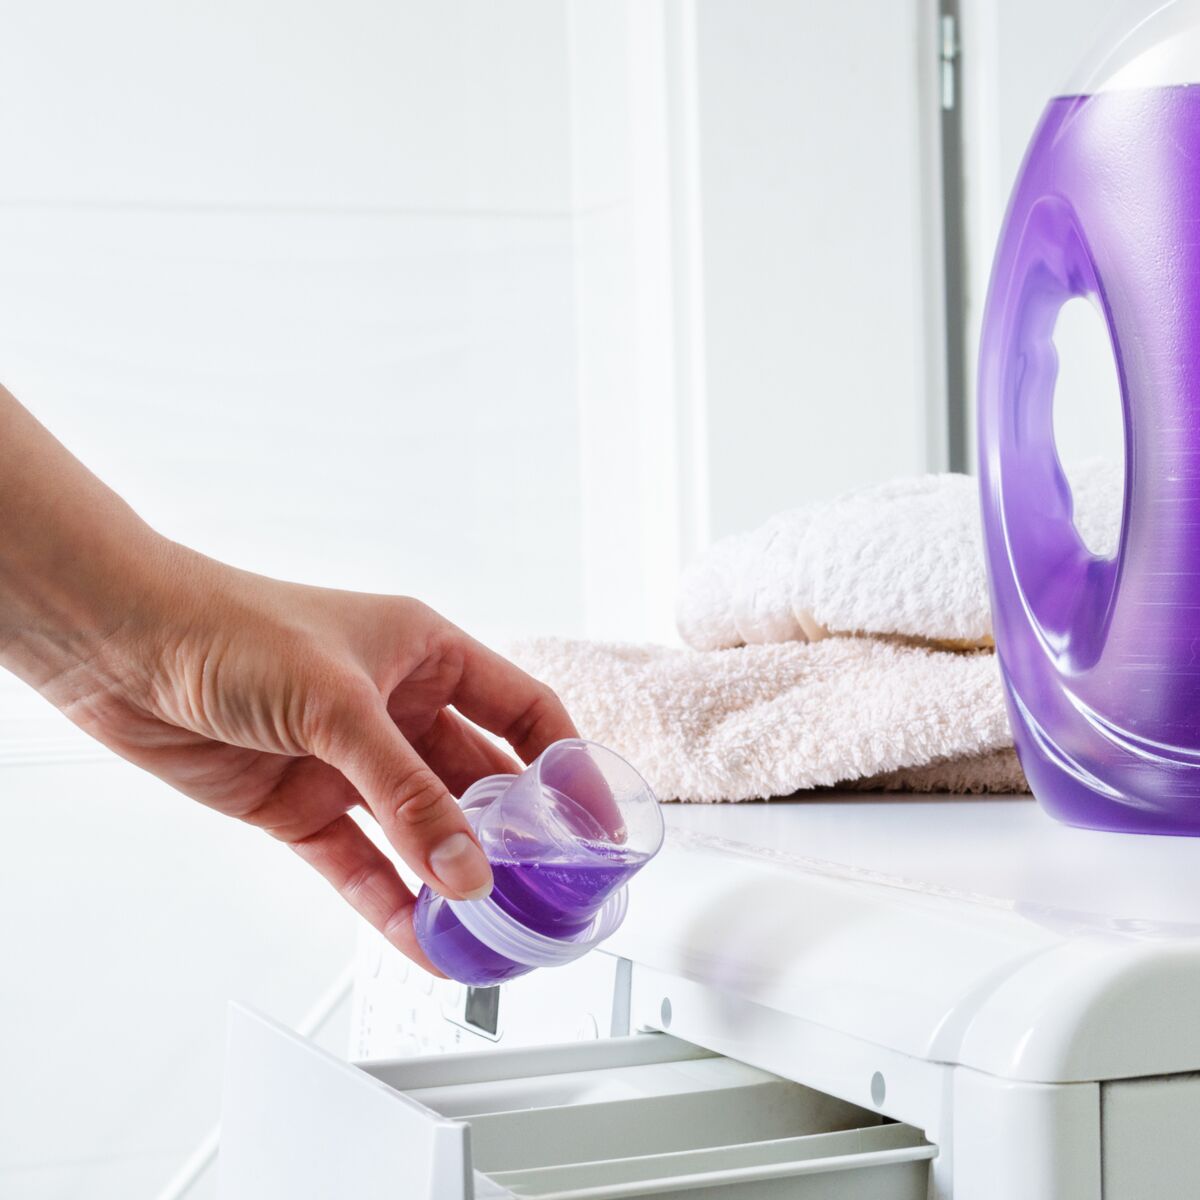 Tambour ou bac : où vaut-il mieux mettre sa lessive et son adoucissant ? :  Femme Actuelle Le MAG